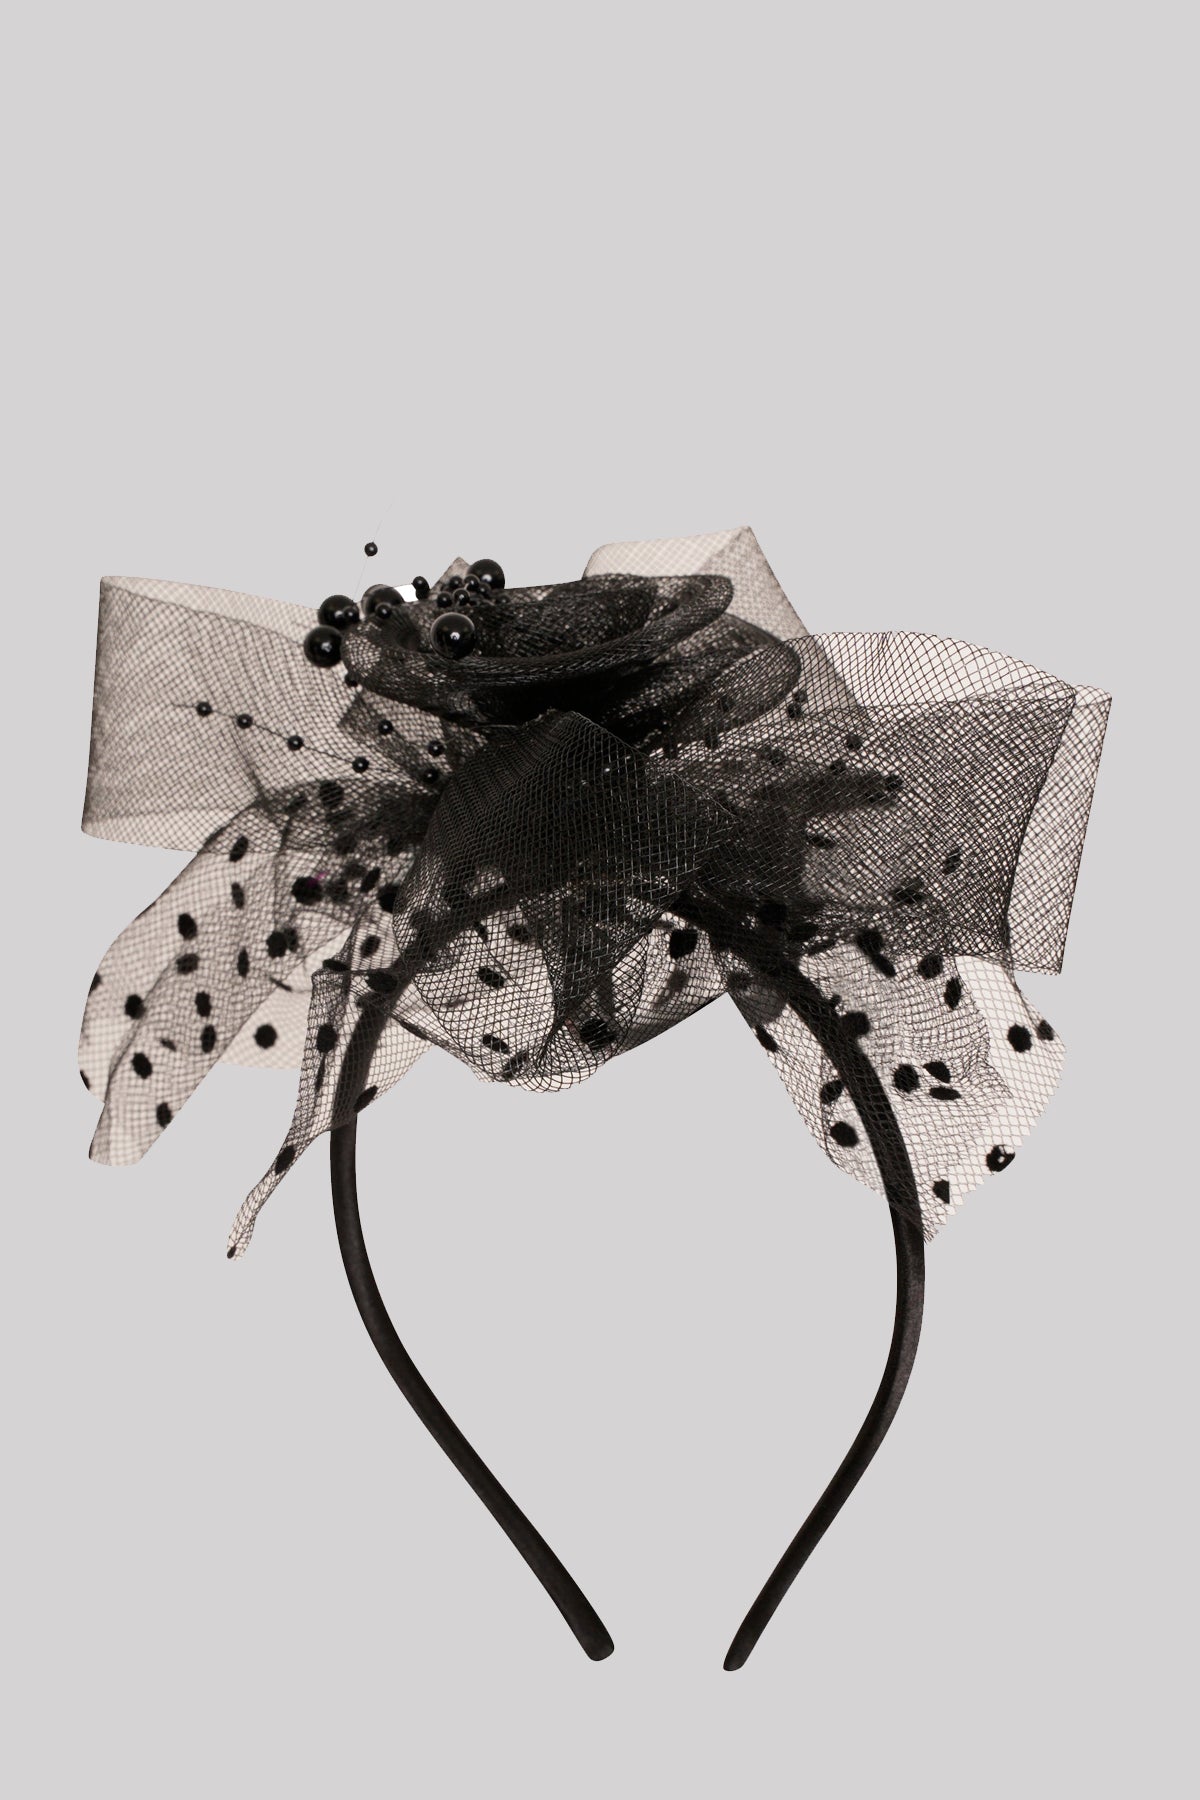 Ro Rox Retro 1940's 1950's Net Ruffle Flower Hairband